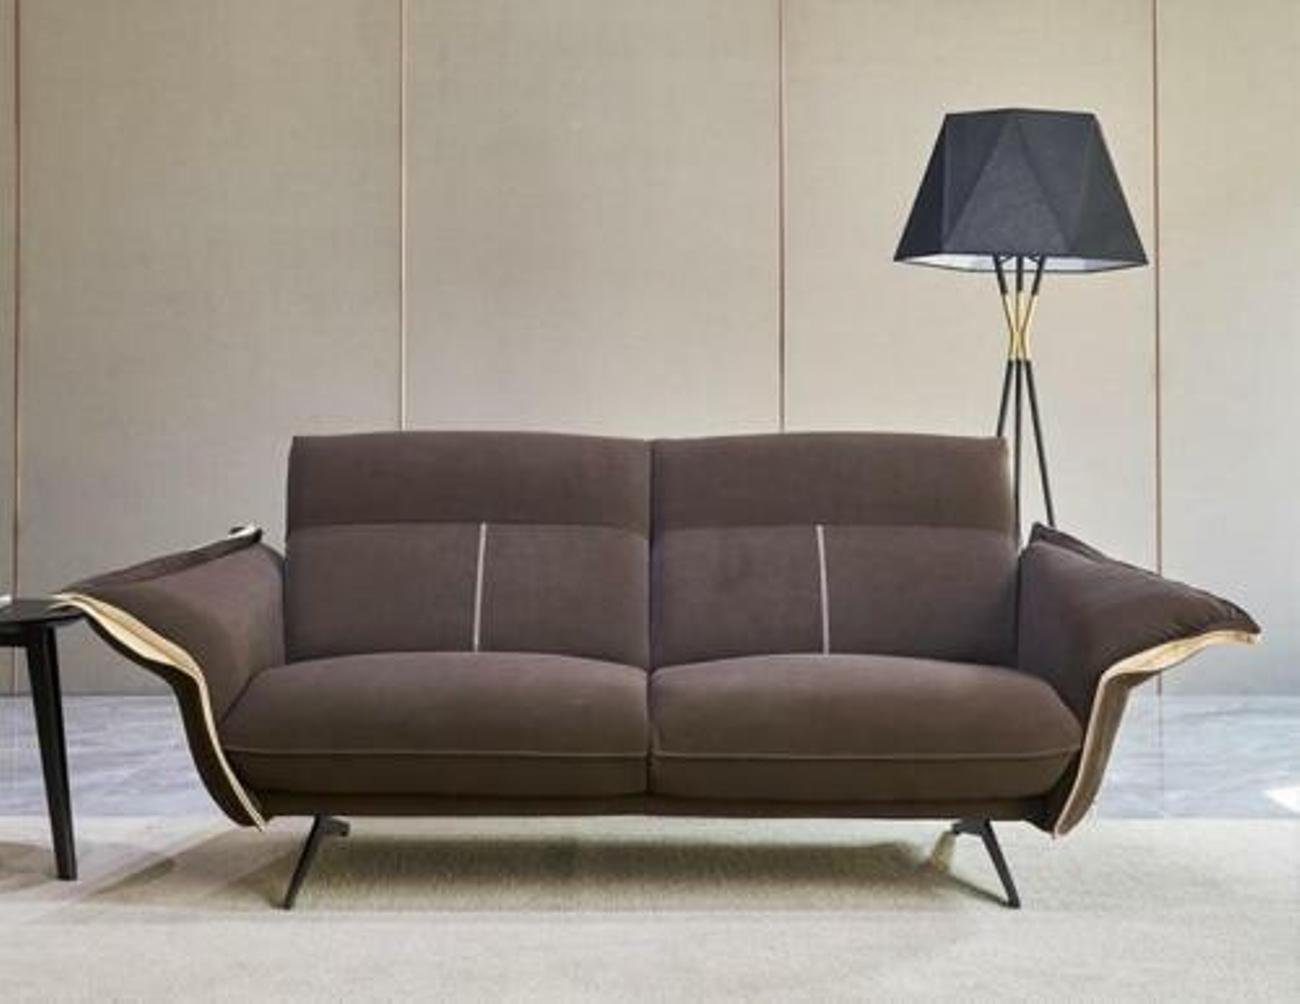 JVmoebel Ecksofa, Italienische Design Möbel Couch Polster Grün Wohnzimmer Textil Ecksofa